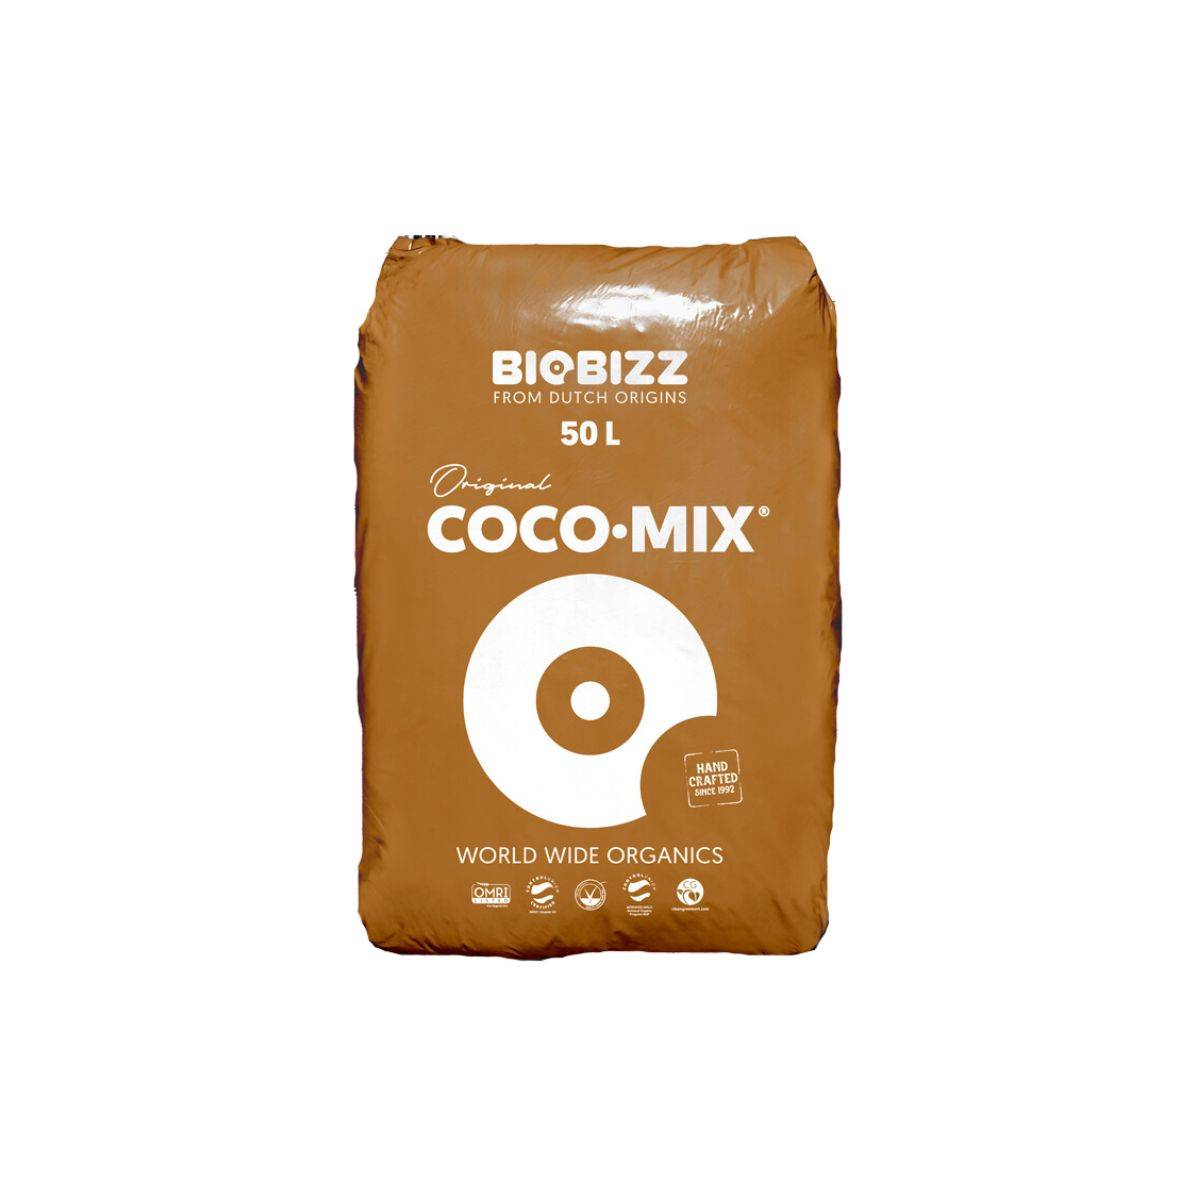 Substrat Biobizz Coco-Mix 50 litres